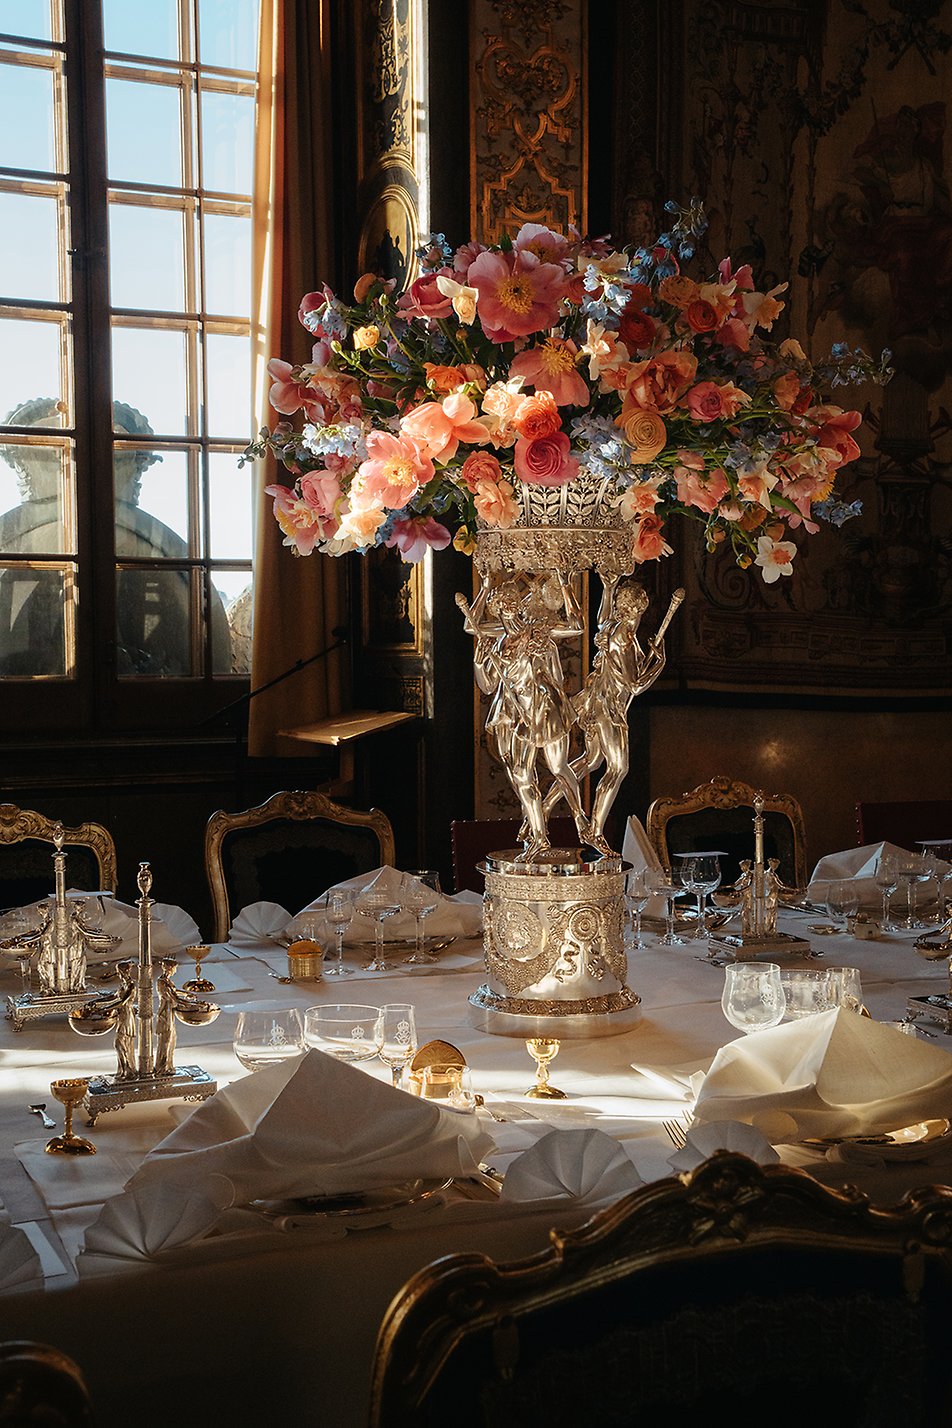 Middagsbordet i Karl XI:s galleri var dukat med den brasilianska silverservisen och blomsterdekorationer med ranunkel, pion, narciss, riddarsporre och tulpan.